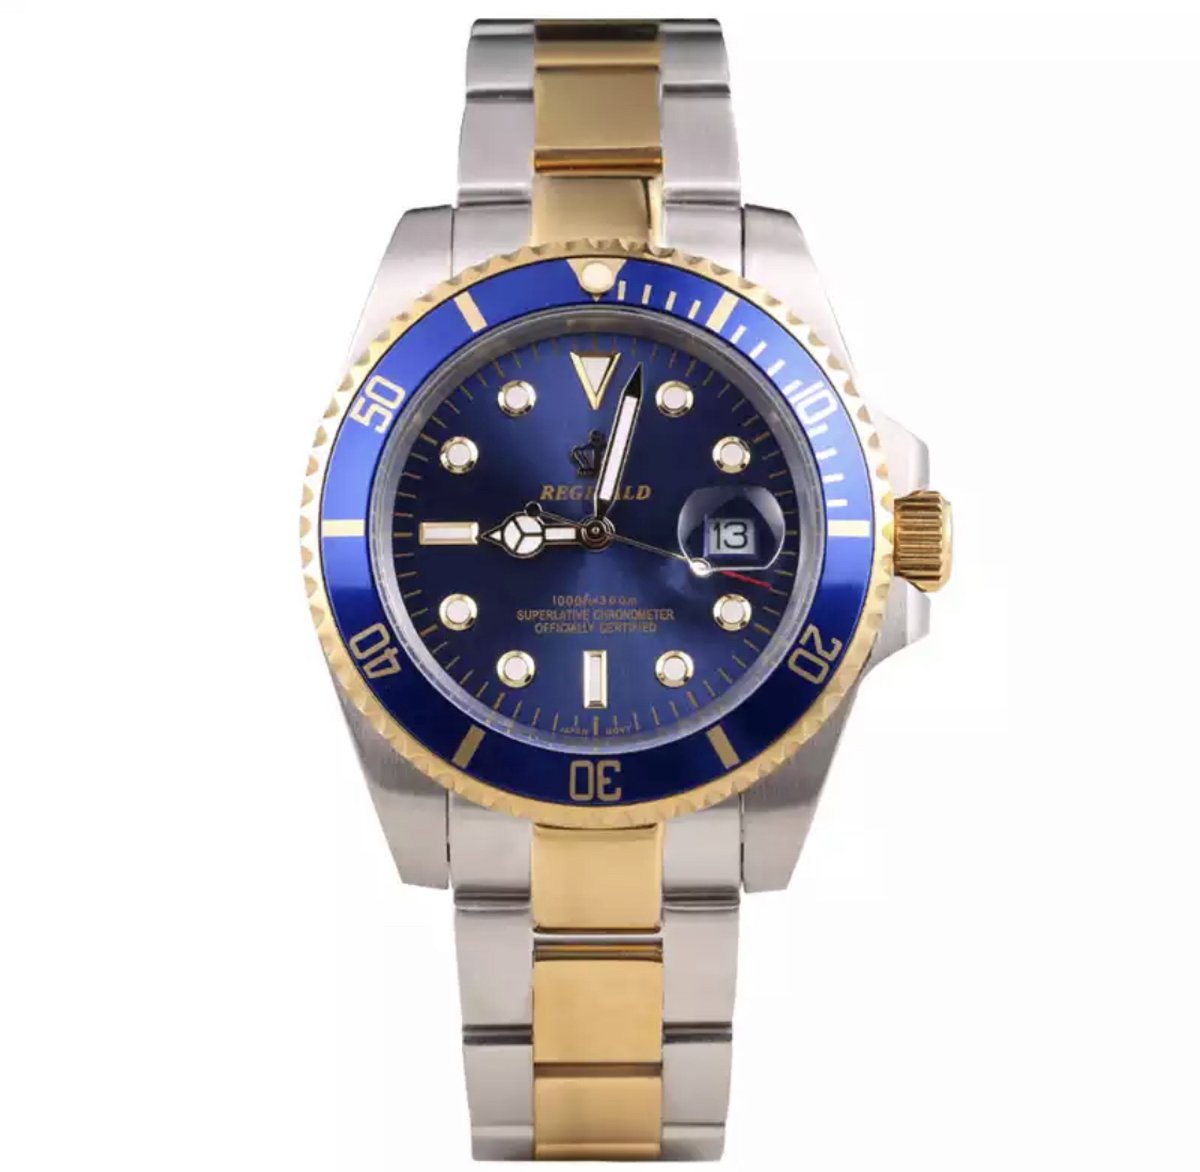 Reginald Horloges - Gold Blue- Horloge mannen - Luxe Design - Heren horloge - 40 mm - Roestvrij Staal - Waterdicht - Schokbestendig - Geschenkset